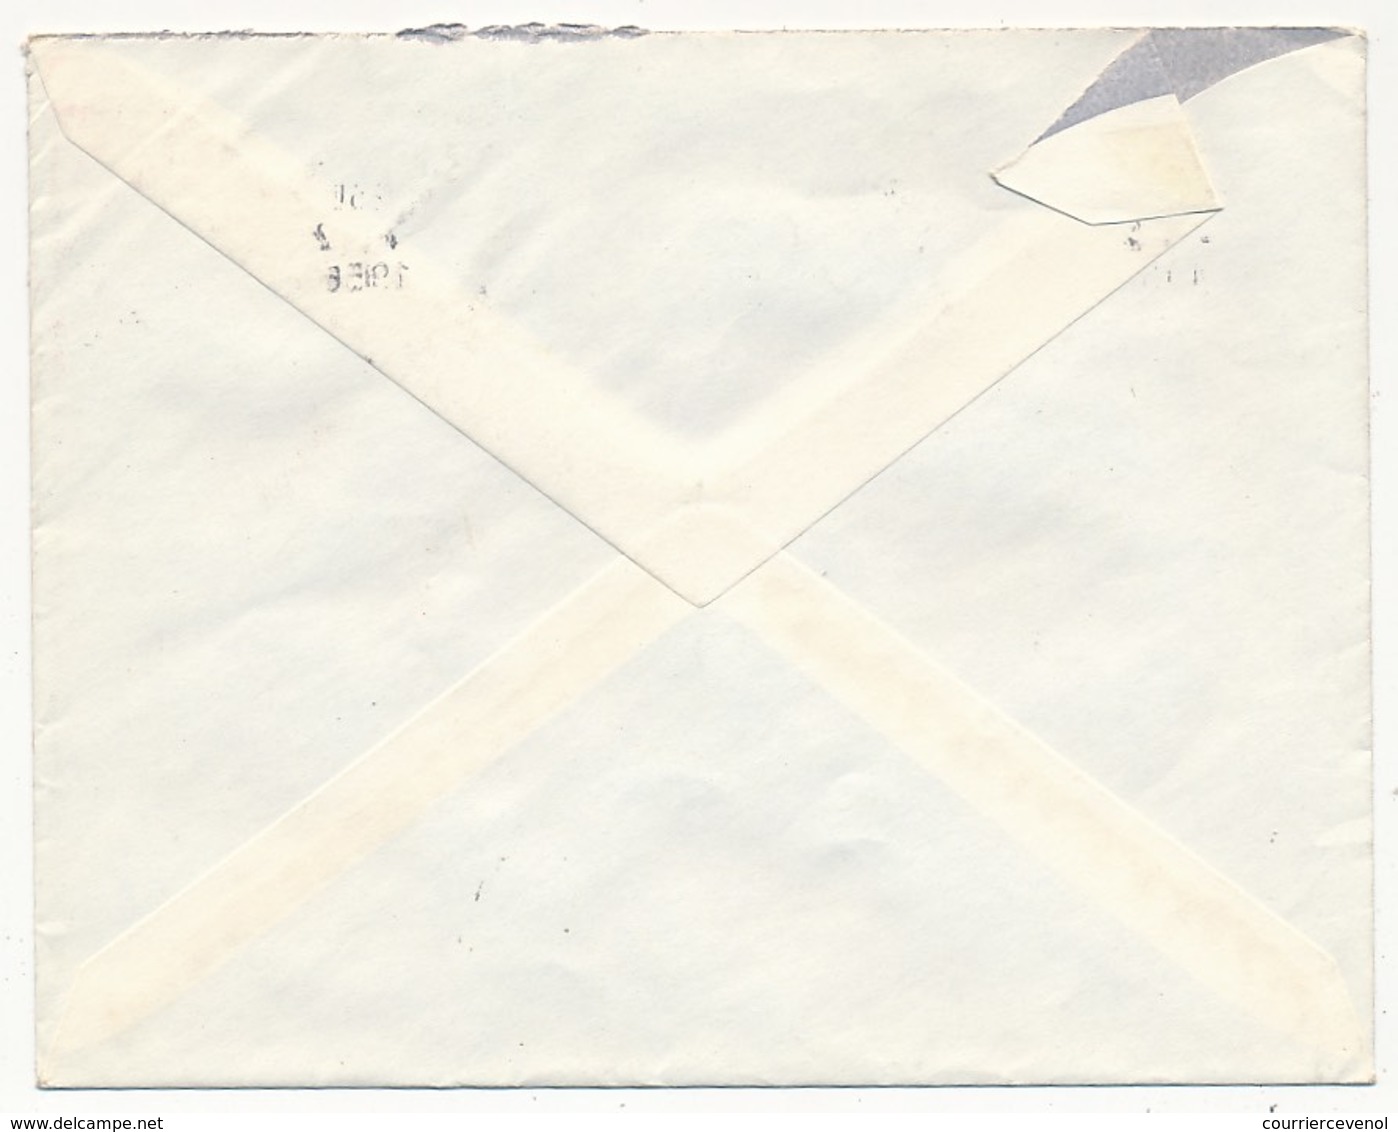 Enveloppe Affr. Composé (Gérard De Nerval, Blason D'Aunis) OMEC Lyon Gare 1956 - Lettres & Documents